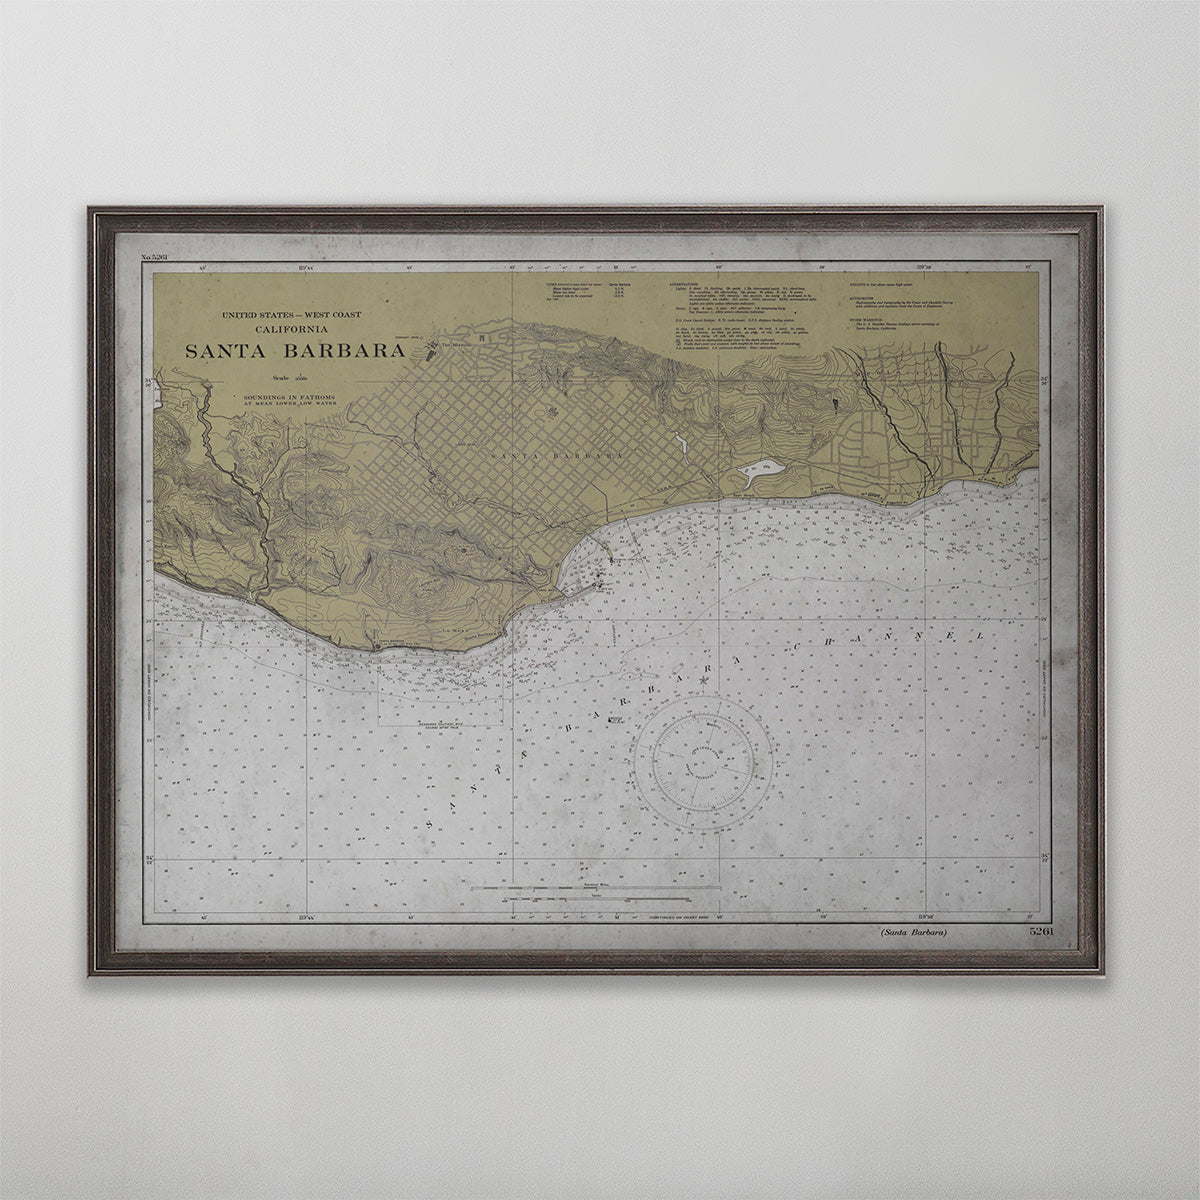 Old vintage historic nautical chart of Santa Barbara wall art home decor. 